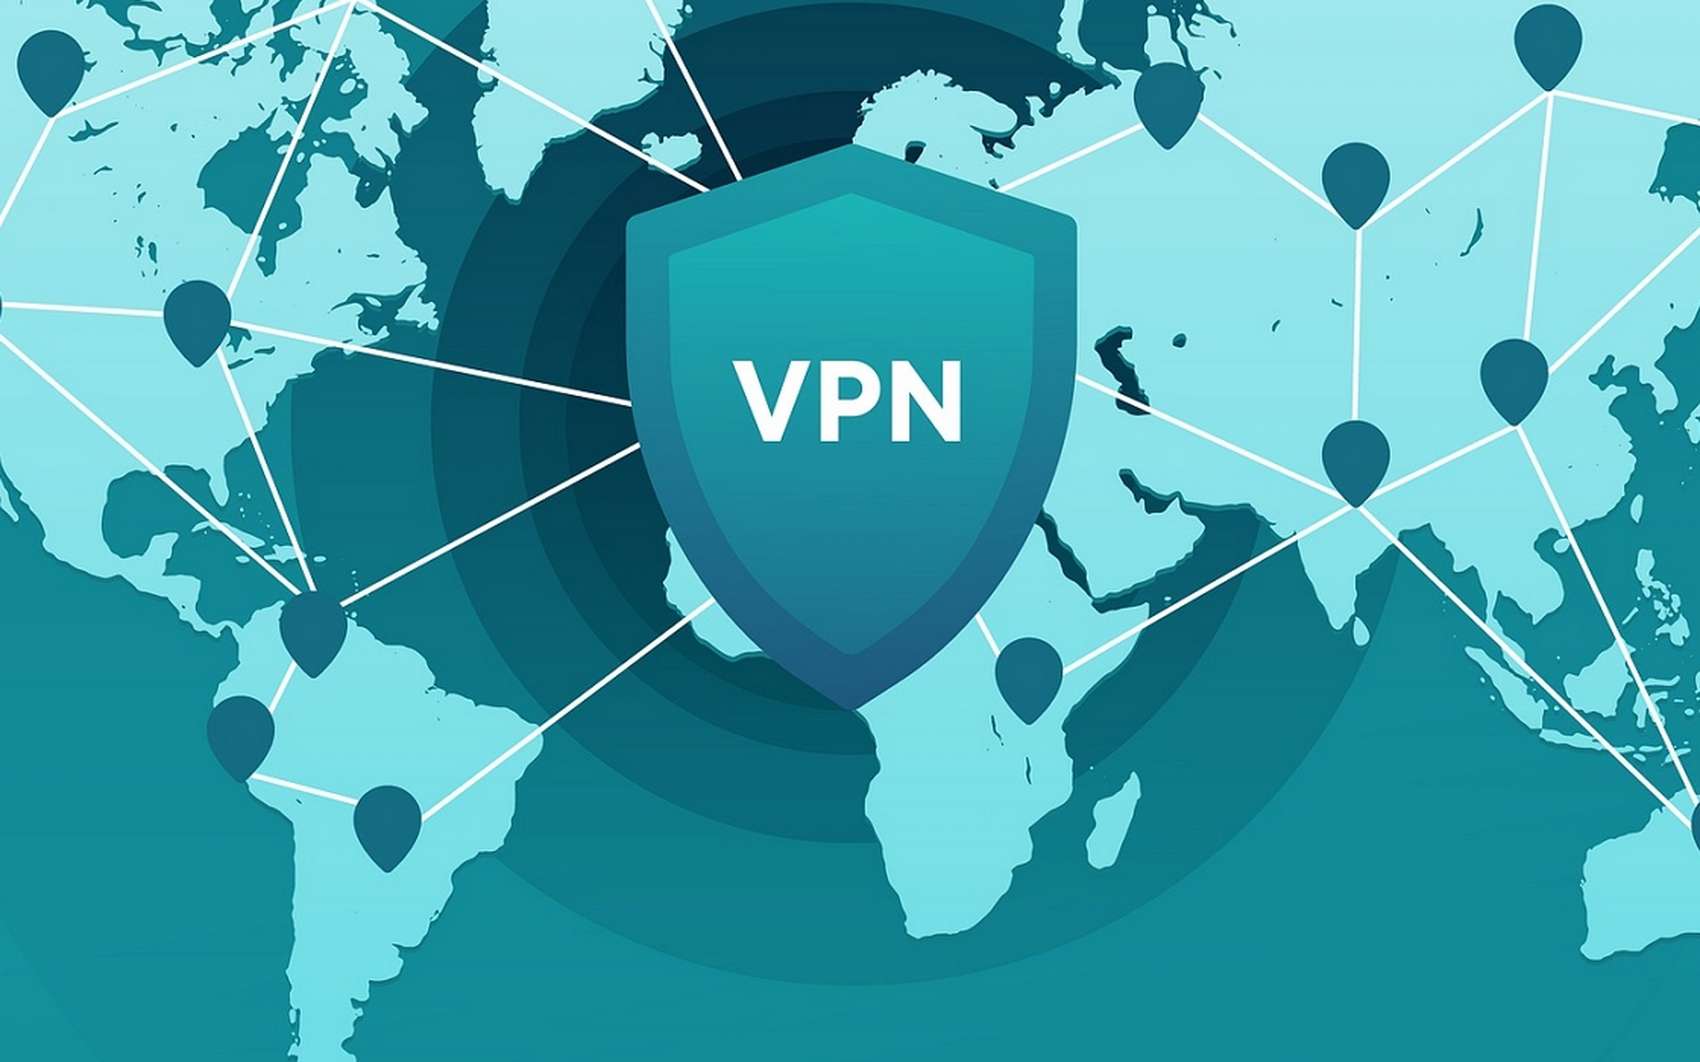 تدوین آیین نامه واگذاری VPN قانونی (بومی) برای استفاده های مجاز